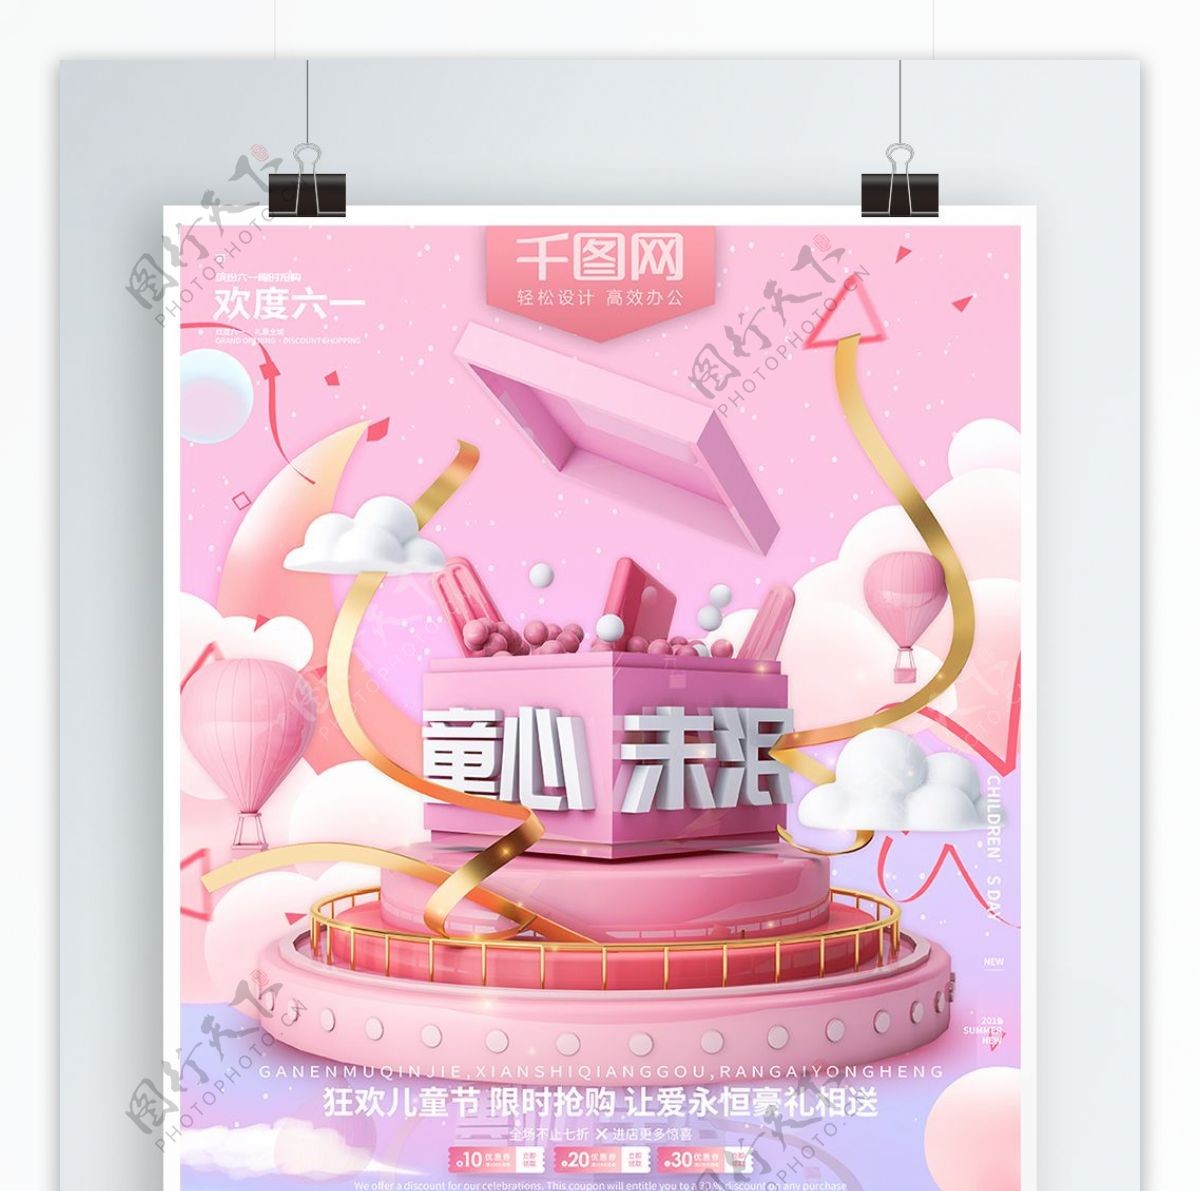 粉色浪漫蛋糕盒子六一儿童节促销海报